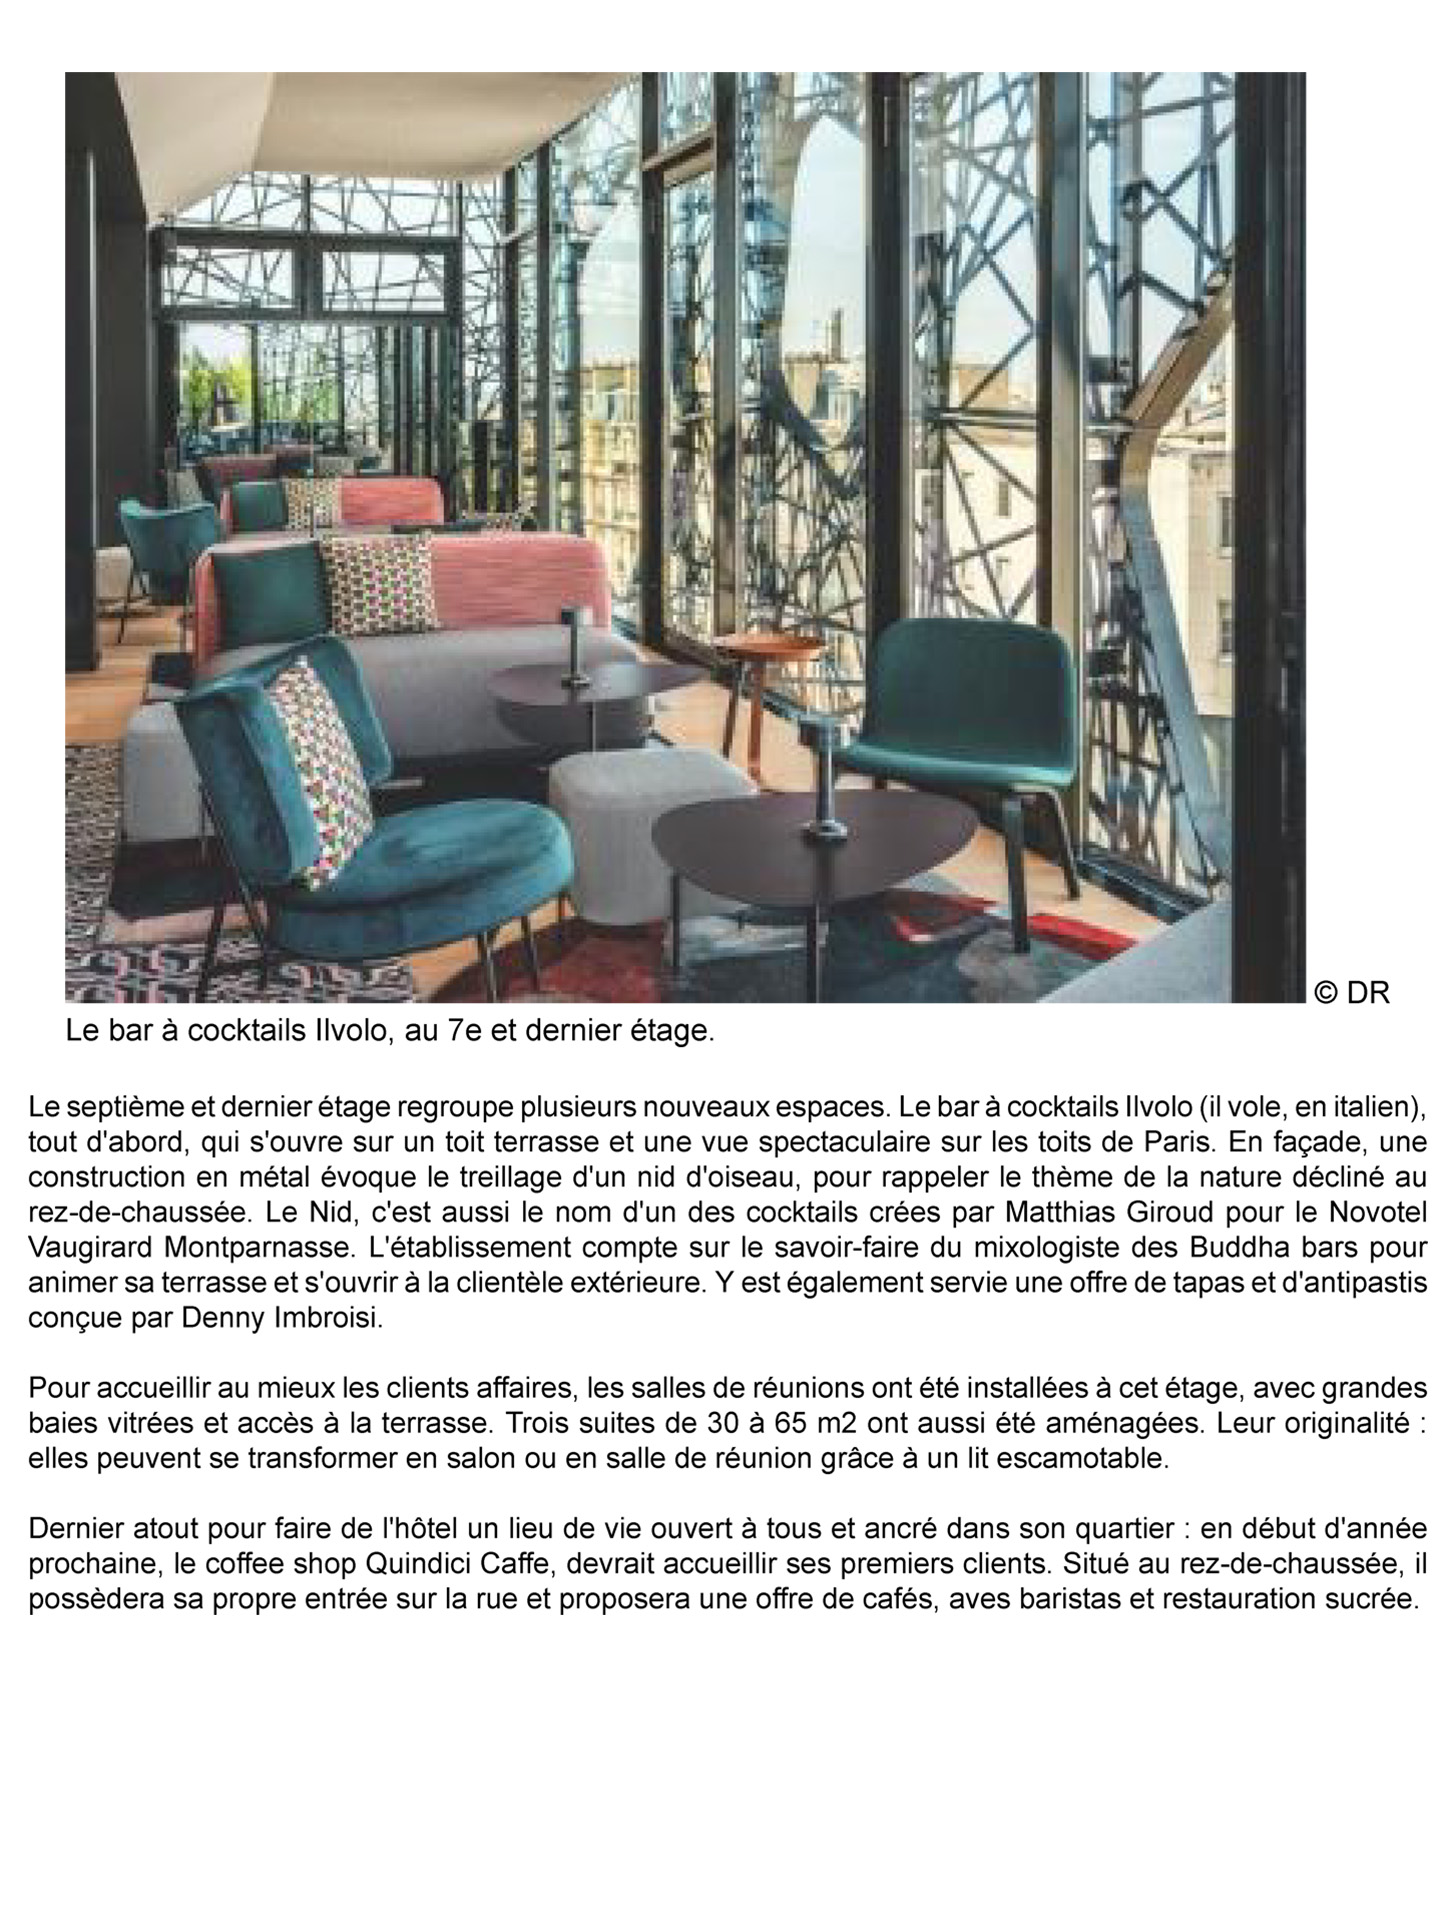 Article sur le Novotel Paris Vaugirard Montparnasse rénové par le studio d'architecture d'intérieur jean-philippe nuel, décoration inspirée de la nature, hotel 4 étoiles, magazine hotellerie restauration